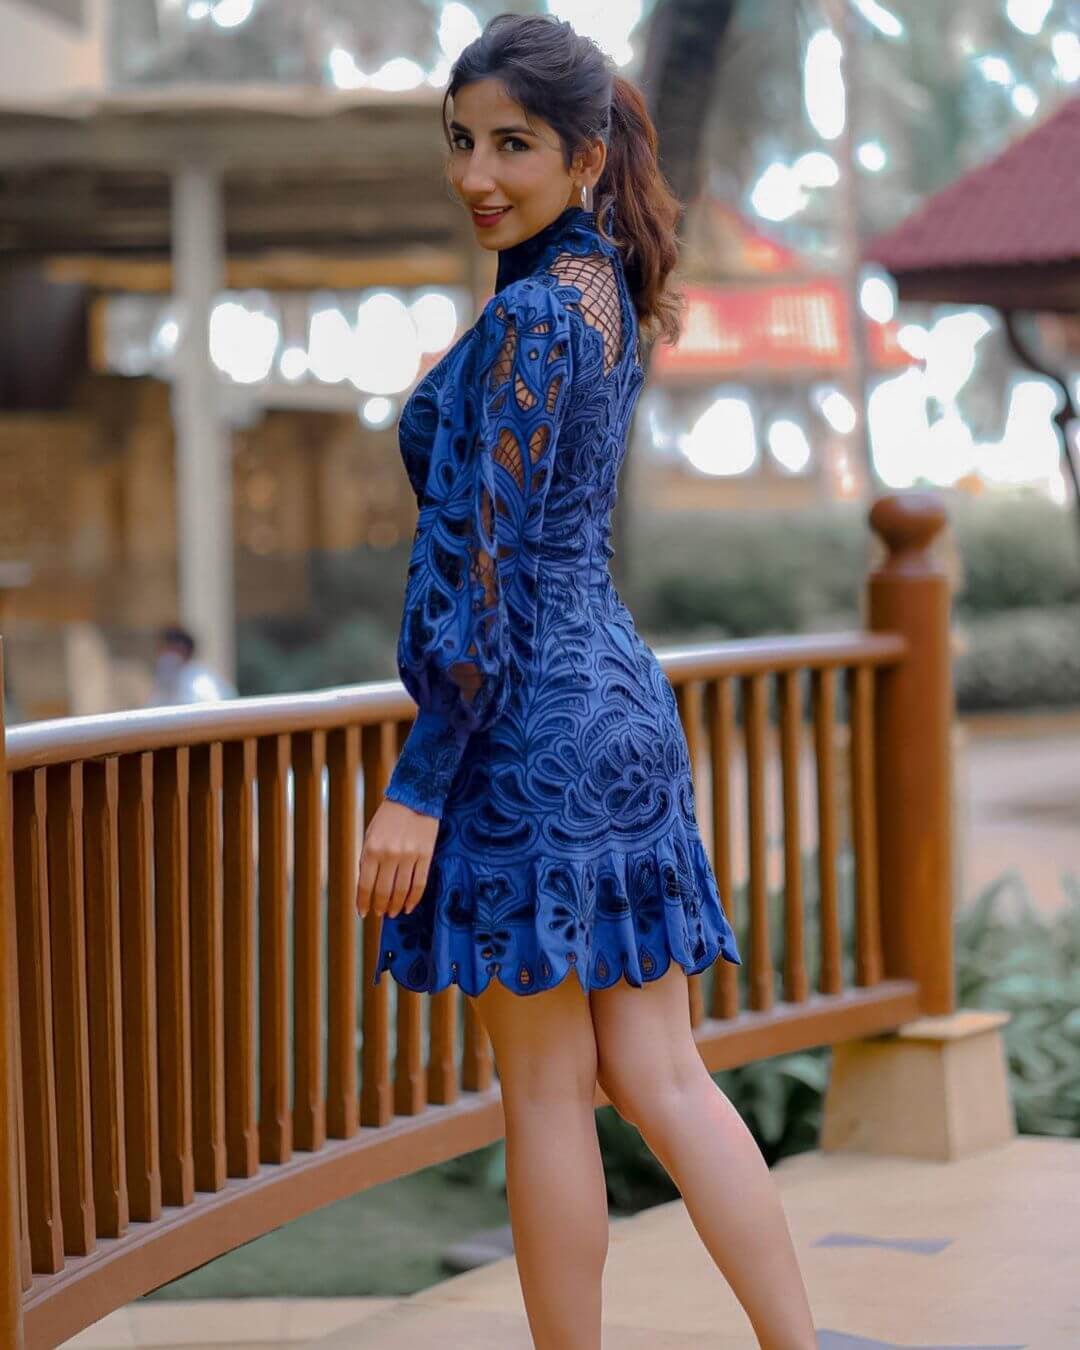 Parul Gulati Look Elegant In Blue Lace Dress